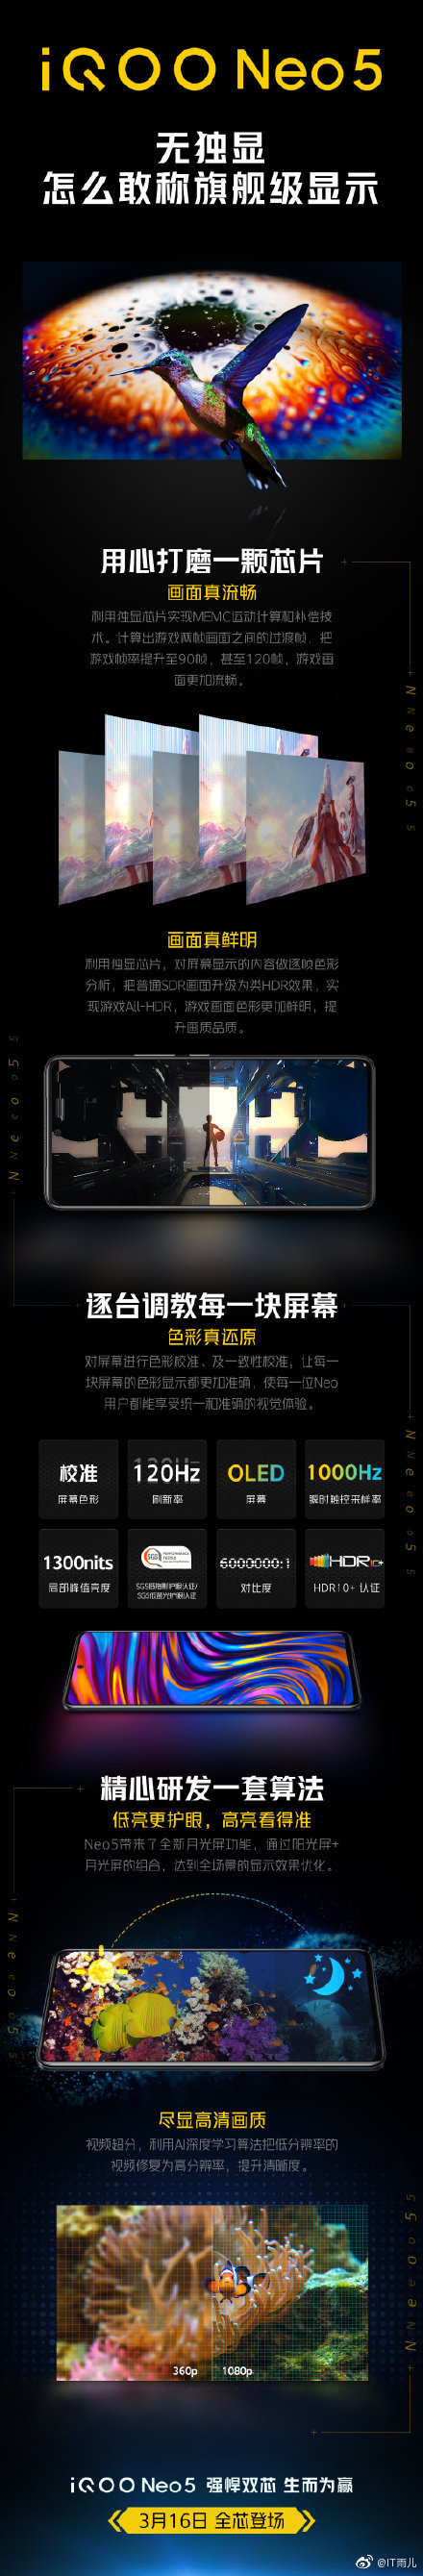 iQOO publica un cartel cargado de publicidad para el lanzamiento del Neo5. (Fuente: Weibo)